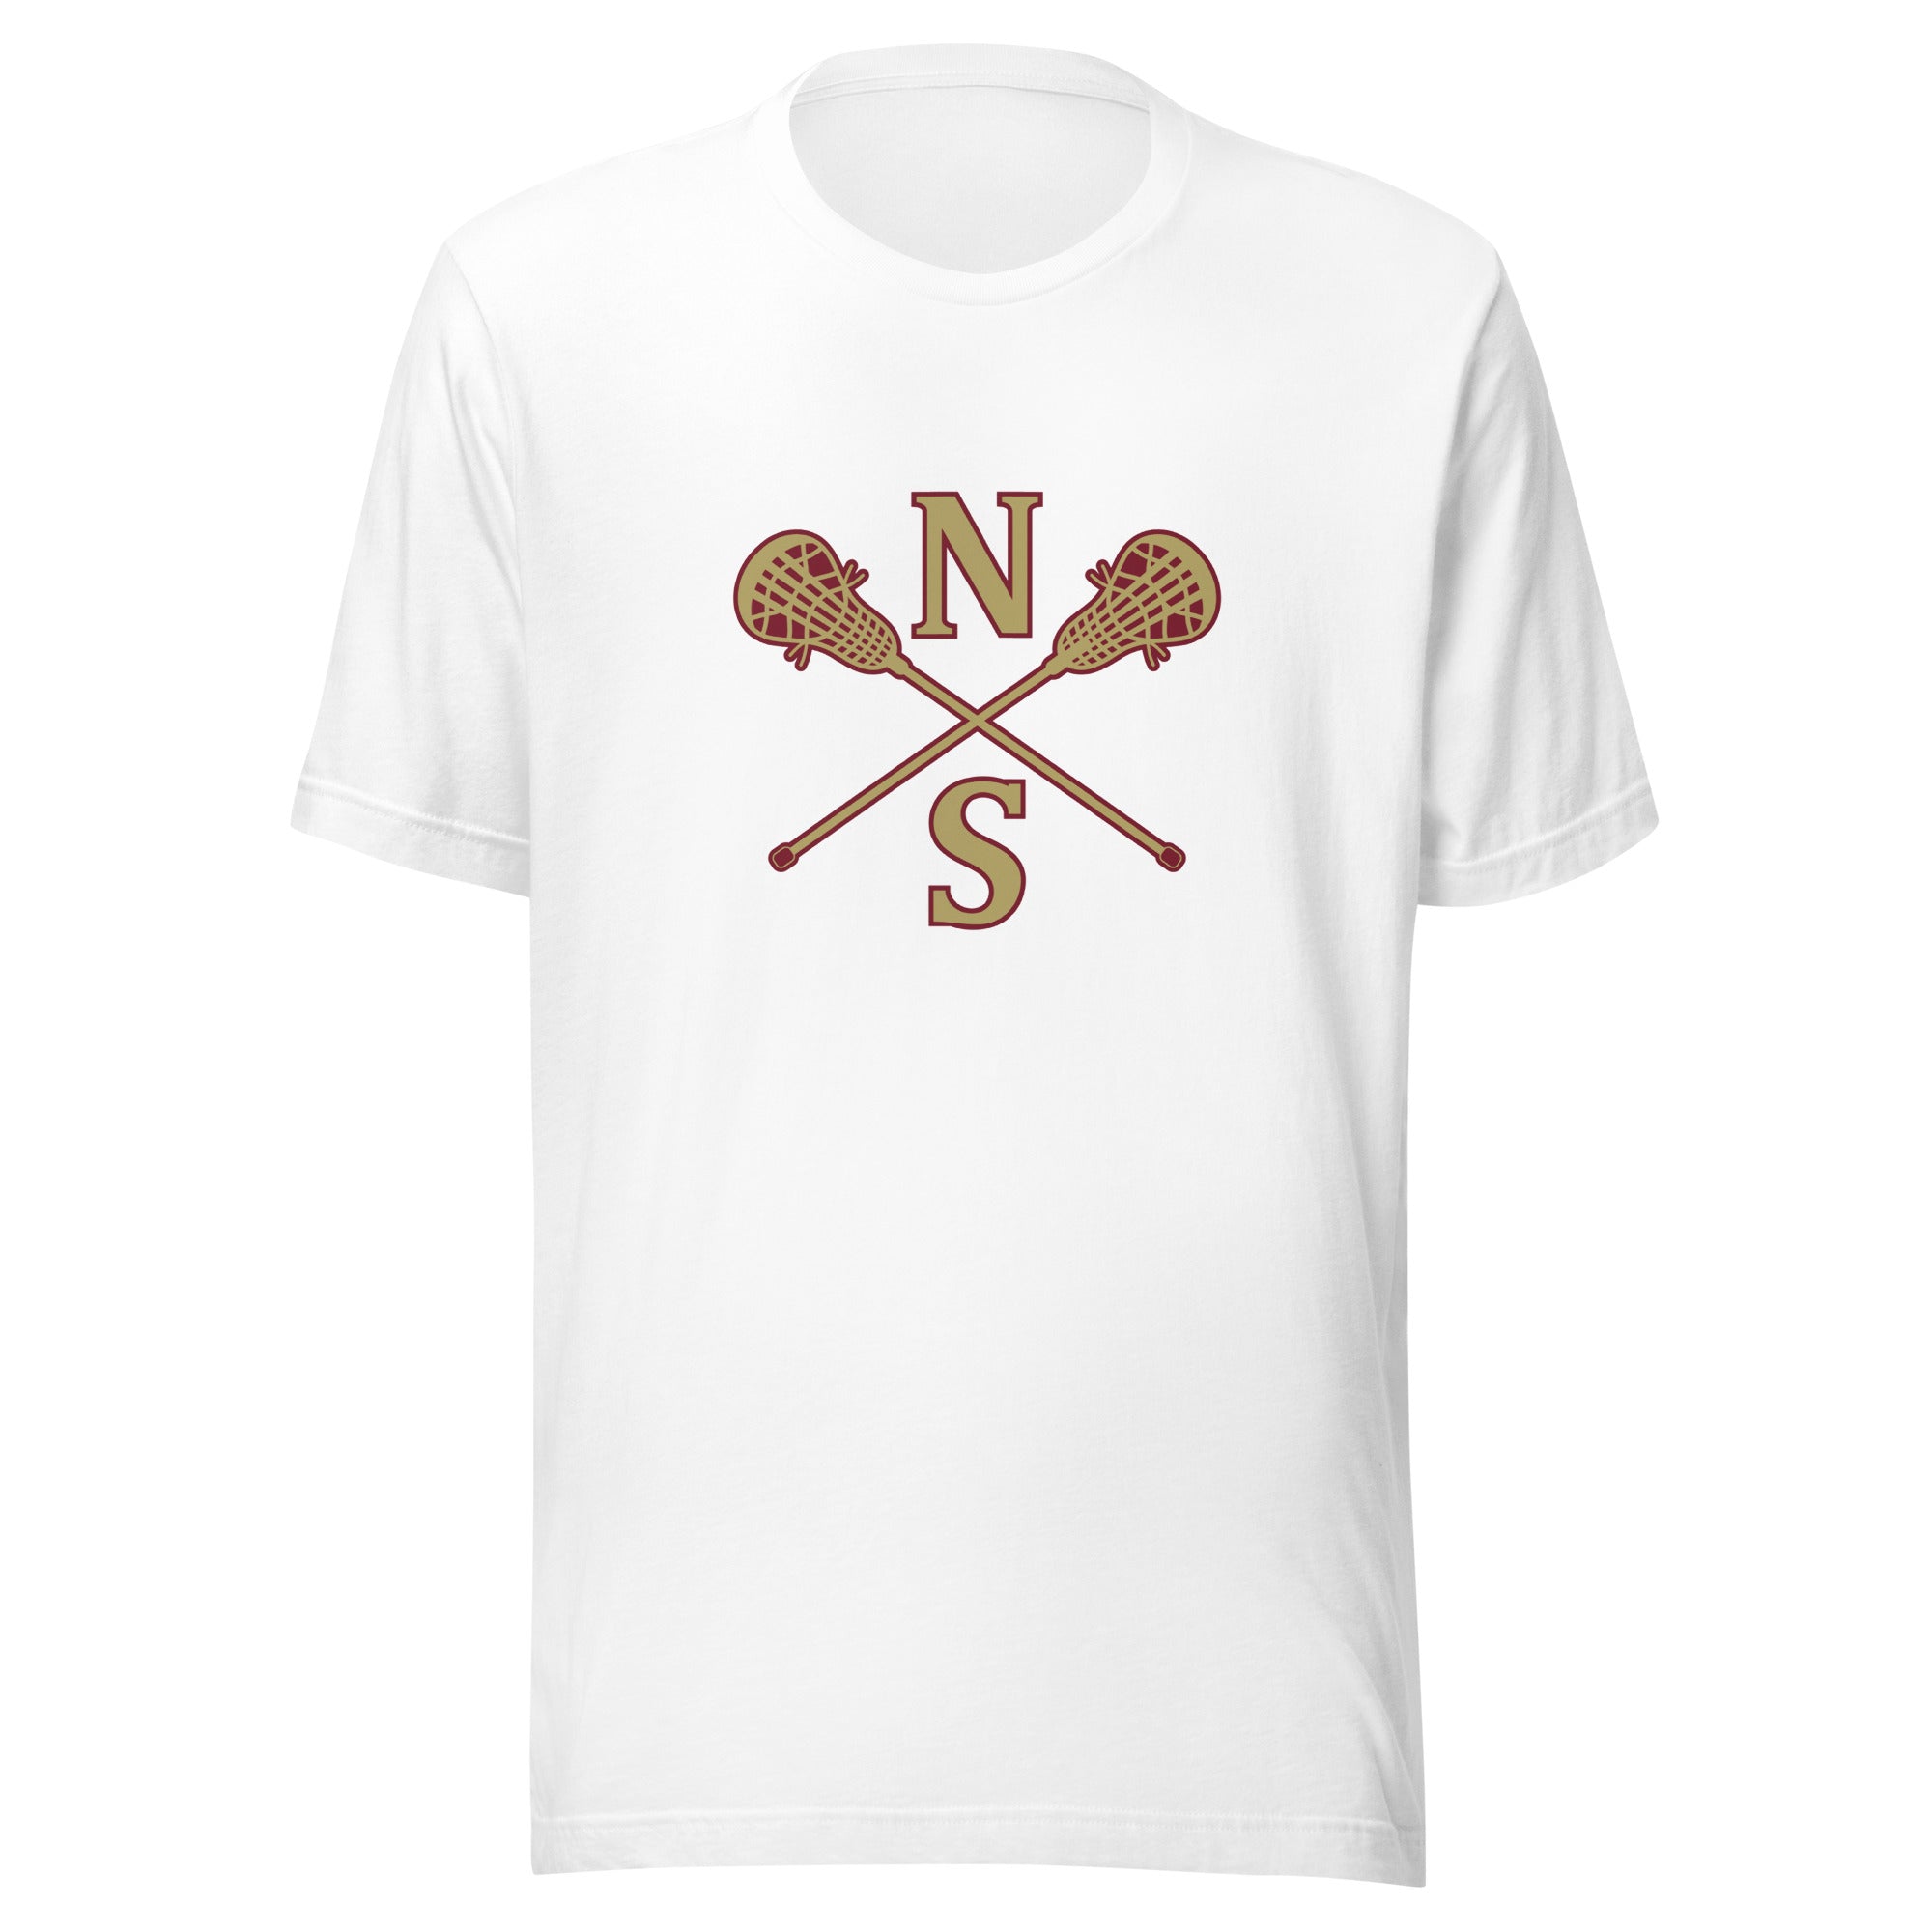 N-S Unisex t-shirt (Girls Logos)